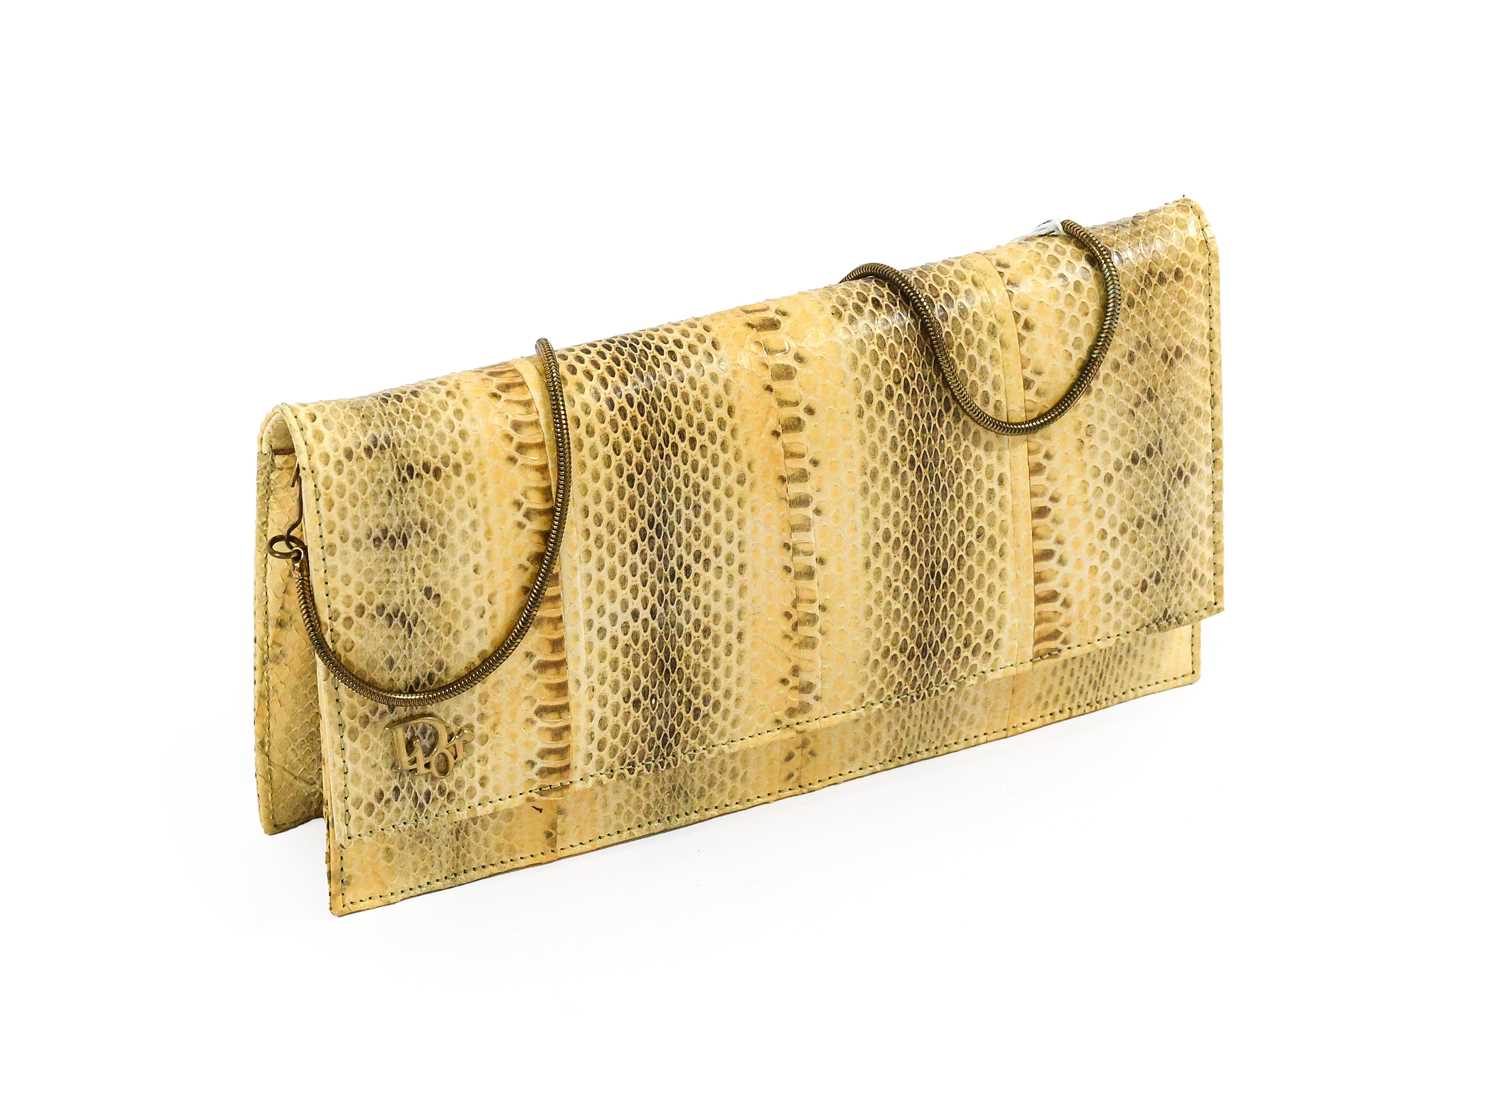 Circa 1970s Dior Cream Lizard Skin Handbag with 'Dior' gilt-tone monogram to the front, zipped